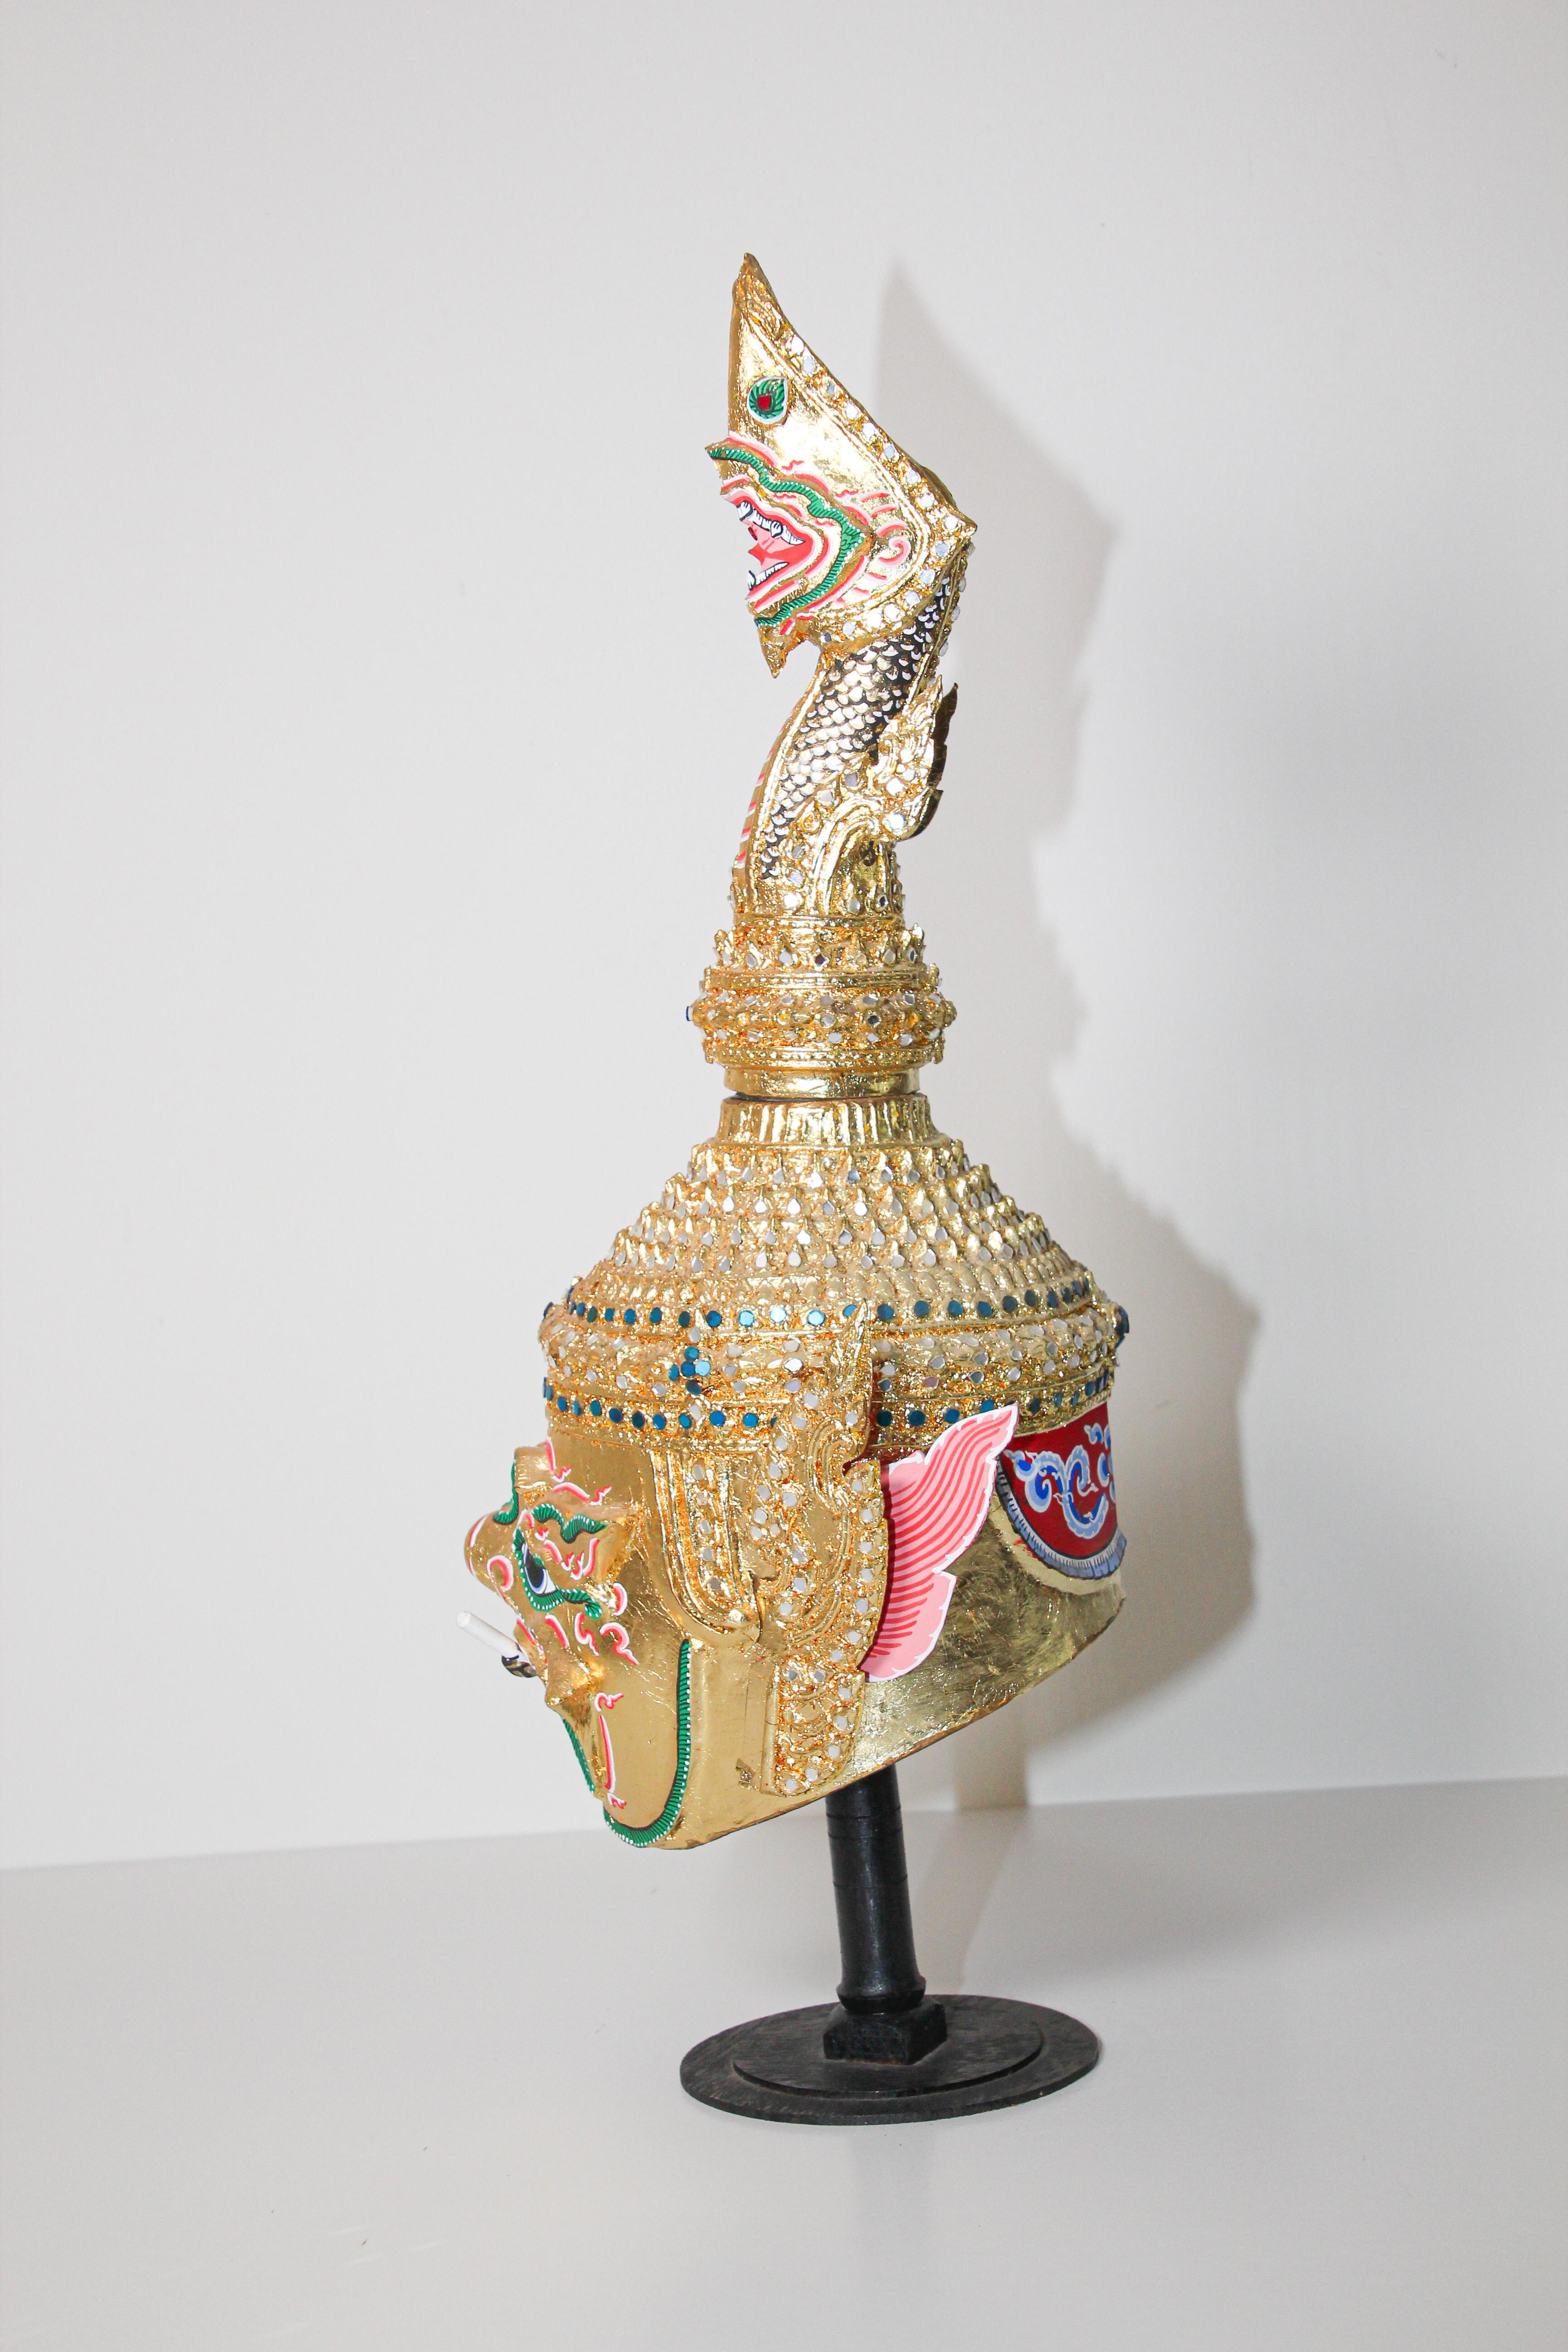 Handgefertigte vergoldete Thai Todsakhan Dämon Maske Tanz Kopfschmuck Krone Tänzer Kostüm auf Stand.
Handgefertigt aus Pappmaché, vergoldetem Metall und mit handgeschliffenem Glas verziert.
Großartiger traditioneller thailändischer